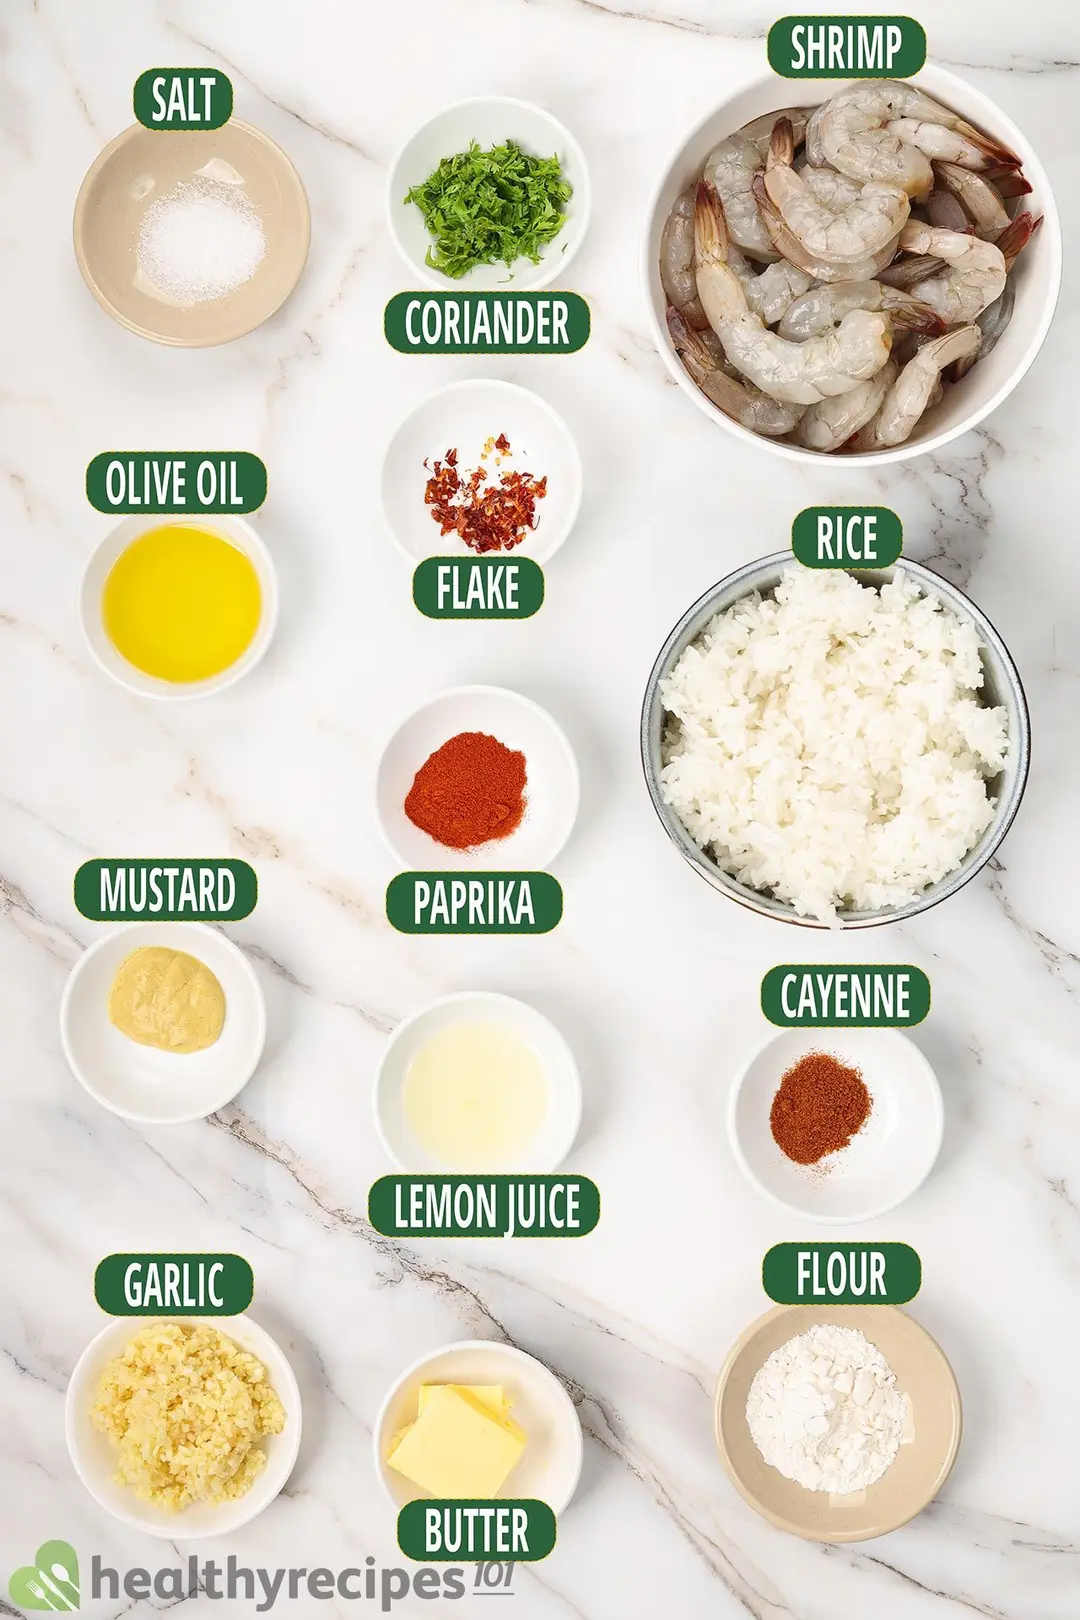 Lemon Garlic Shrimp Ingredients